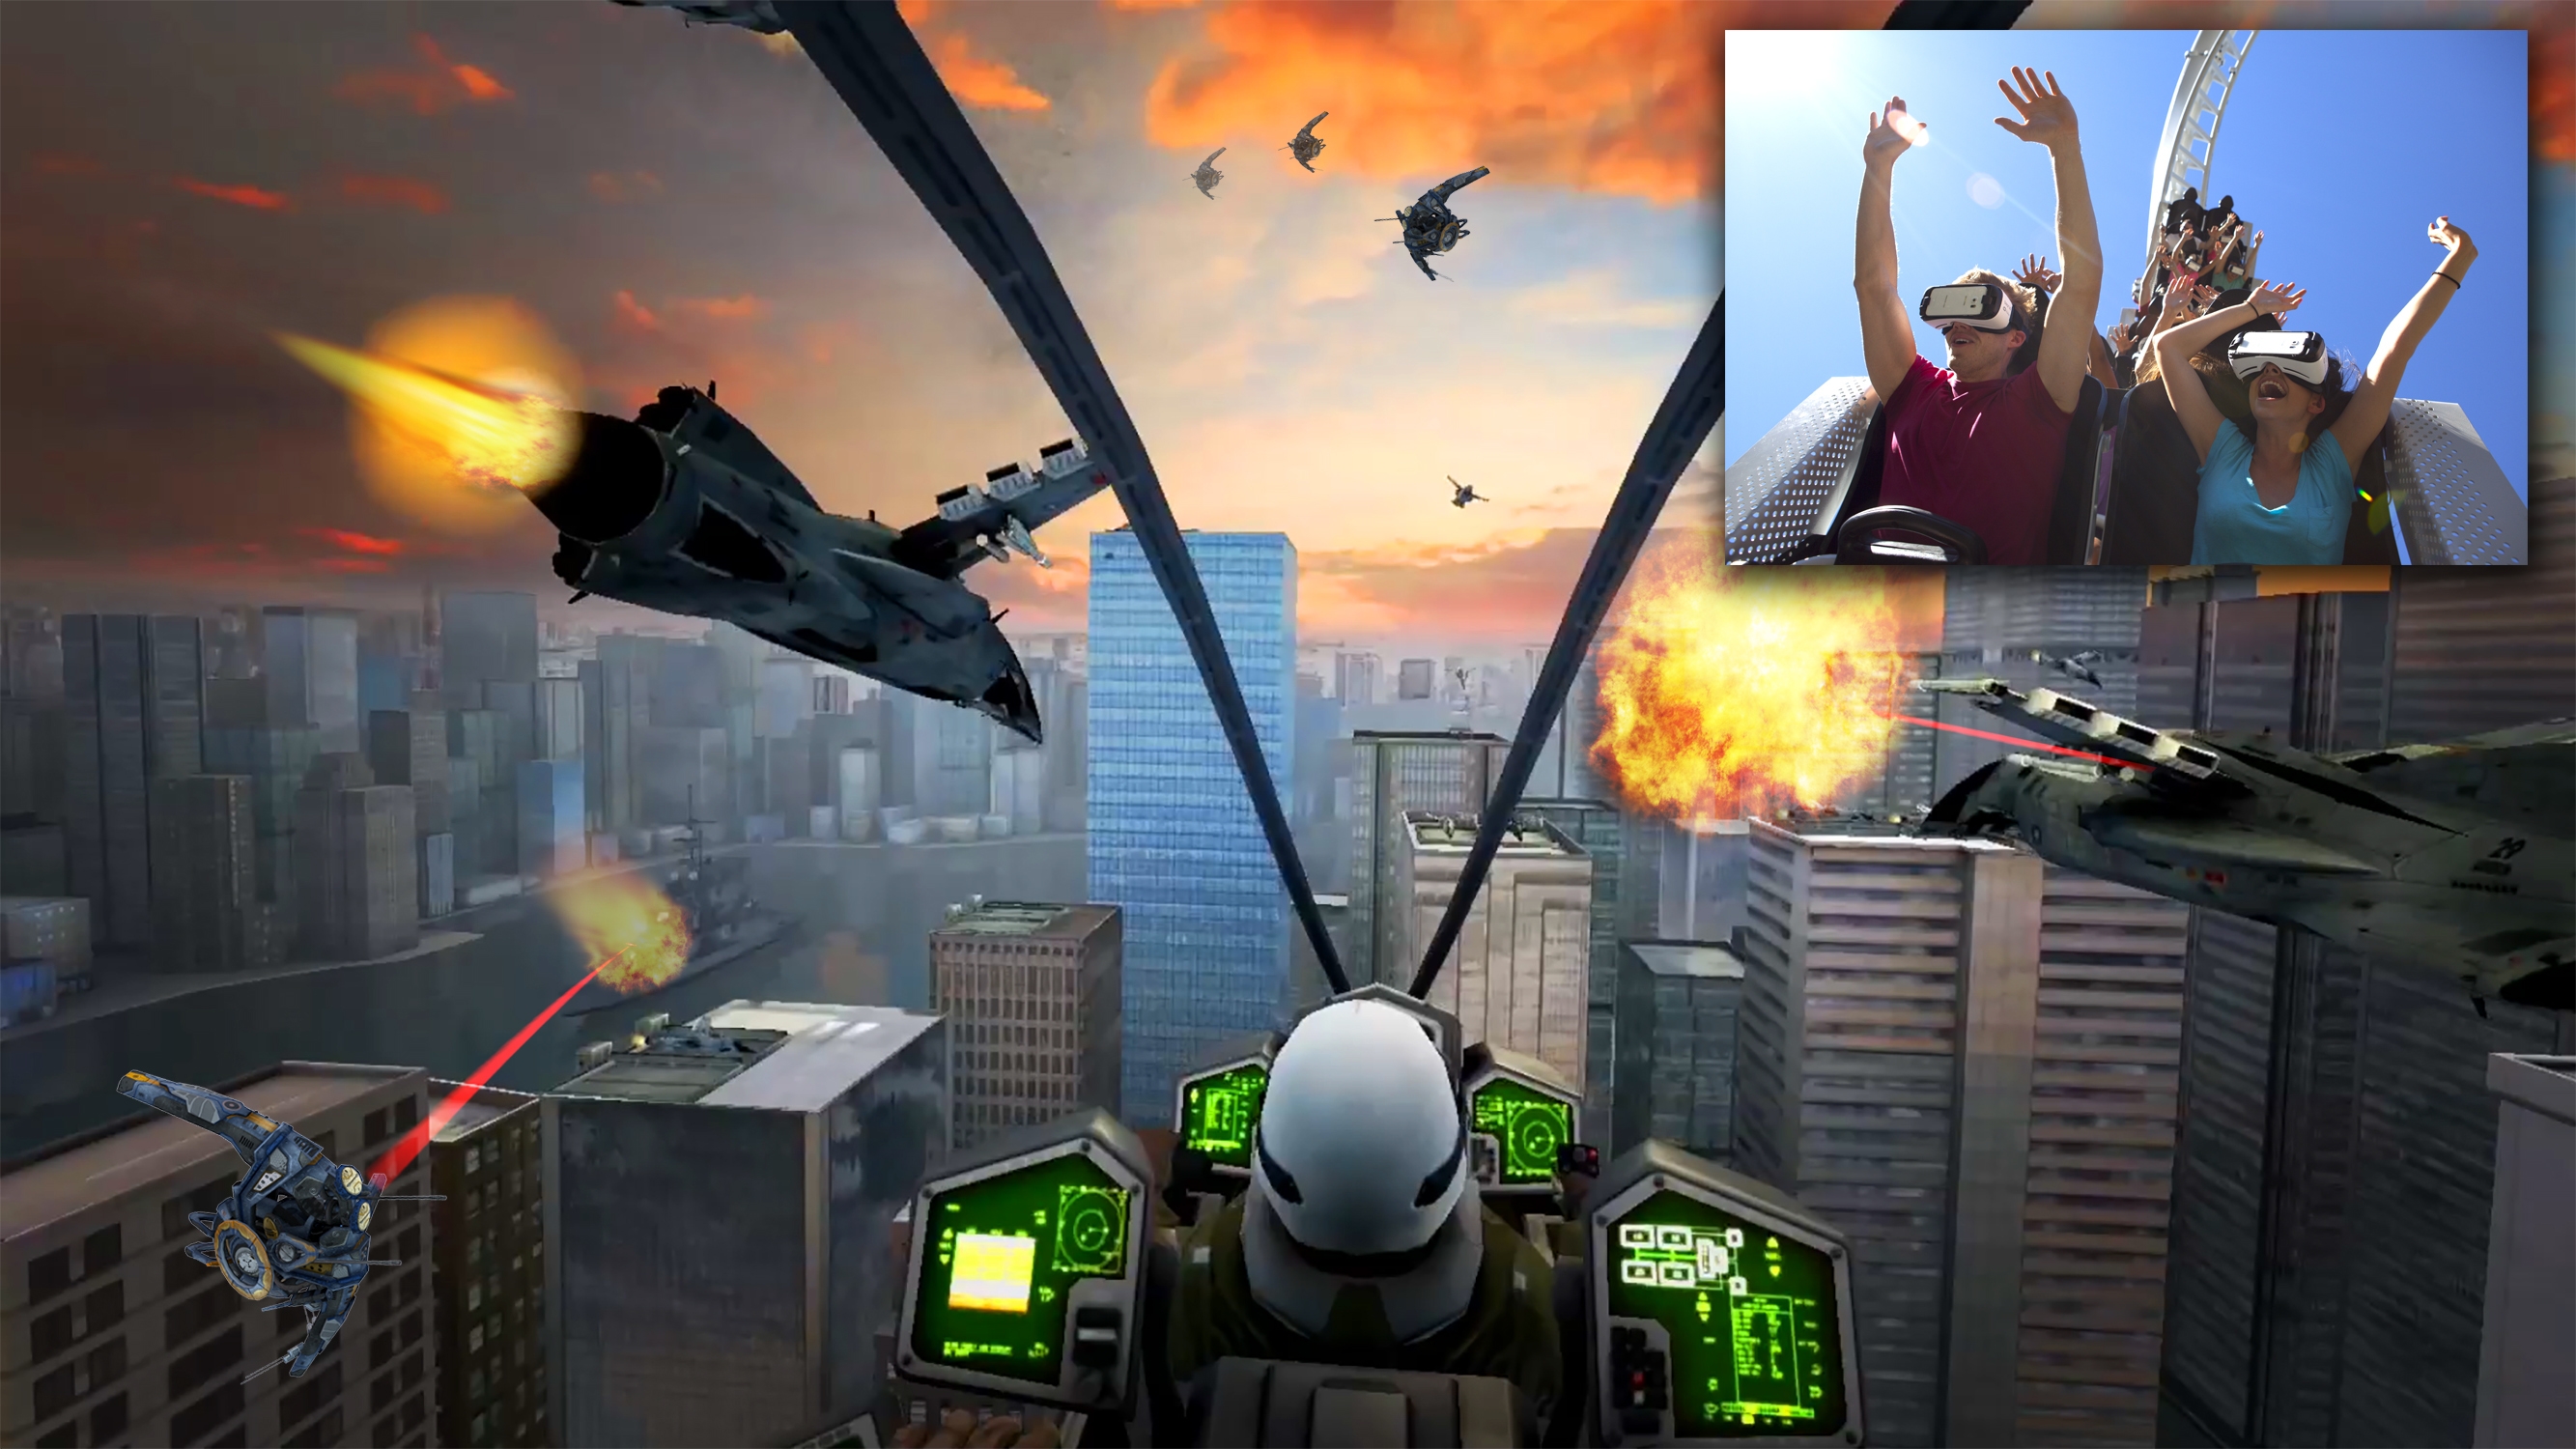 Samsung Gear VR je súčasťou amerických zábavných parkov. Horská dráha ponúka neobvyklé virtuálne vizuálne efekty a skutočný pocit z rýchlosti